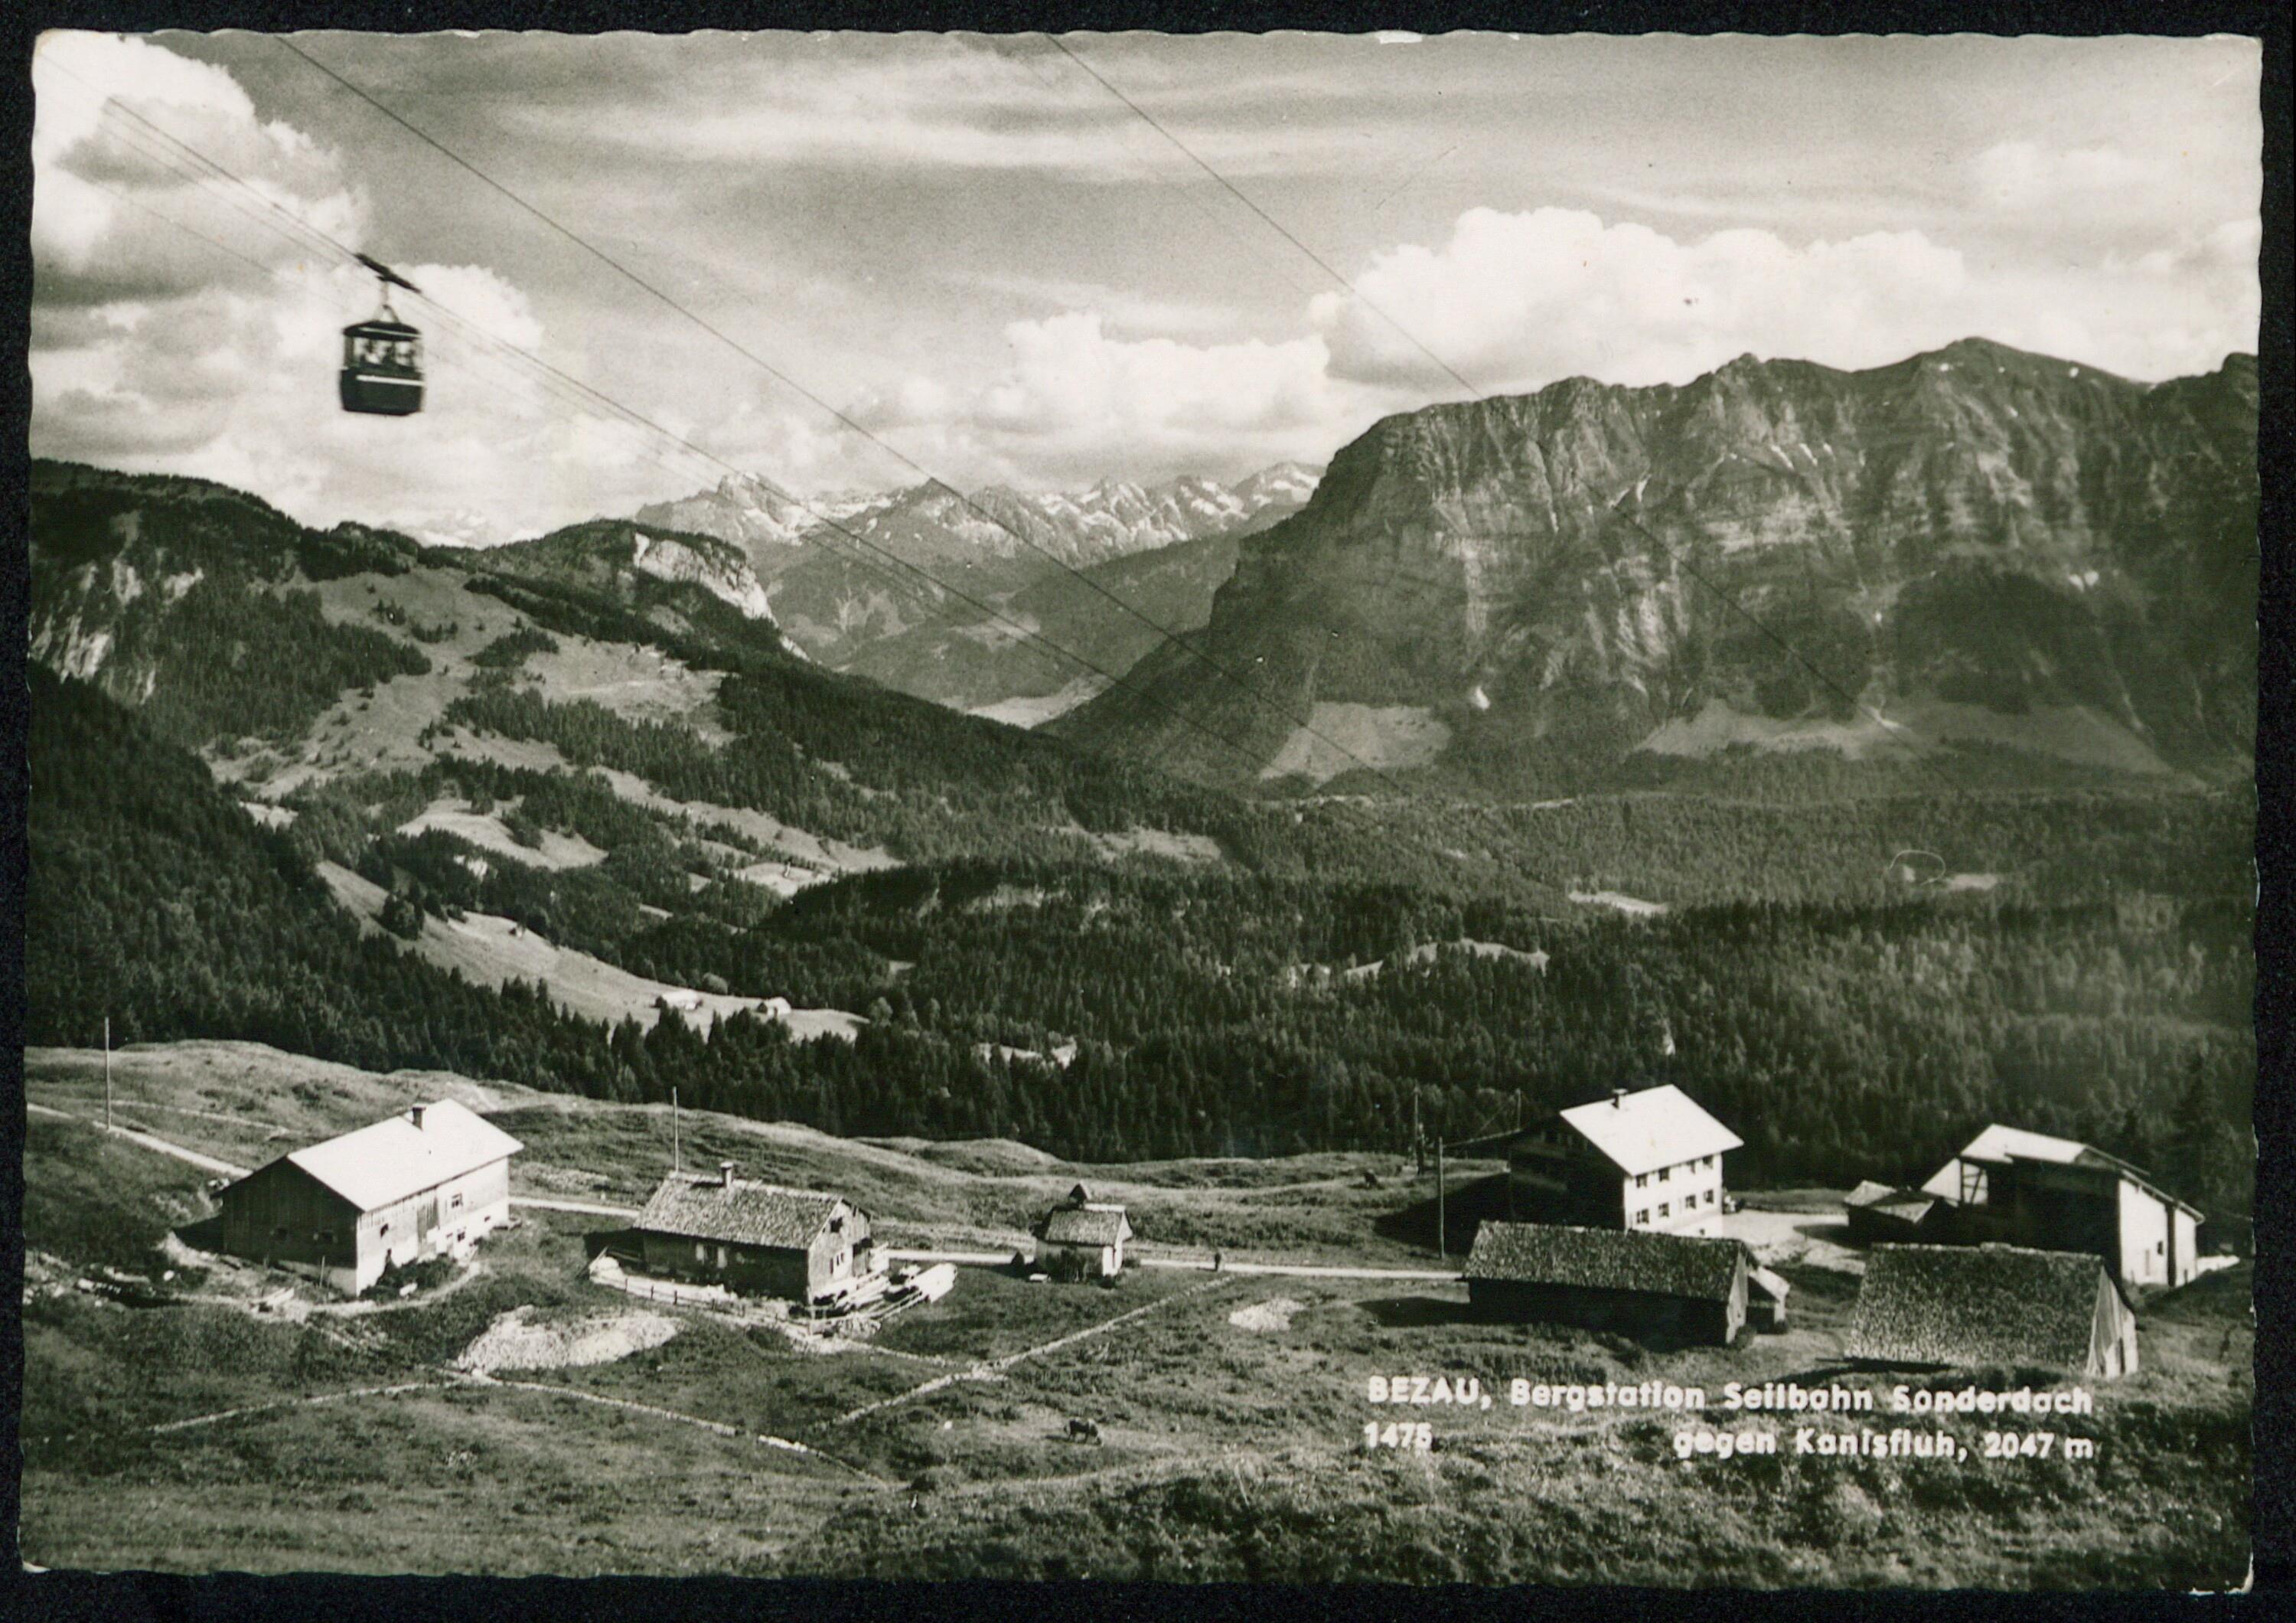 Bezau, Bergstation Seilbahn Sonderdach gegen Kanisfluh, 2047 m></div>


    <hr>
    <div class=